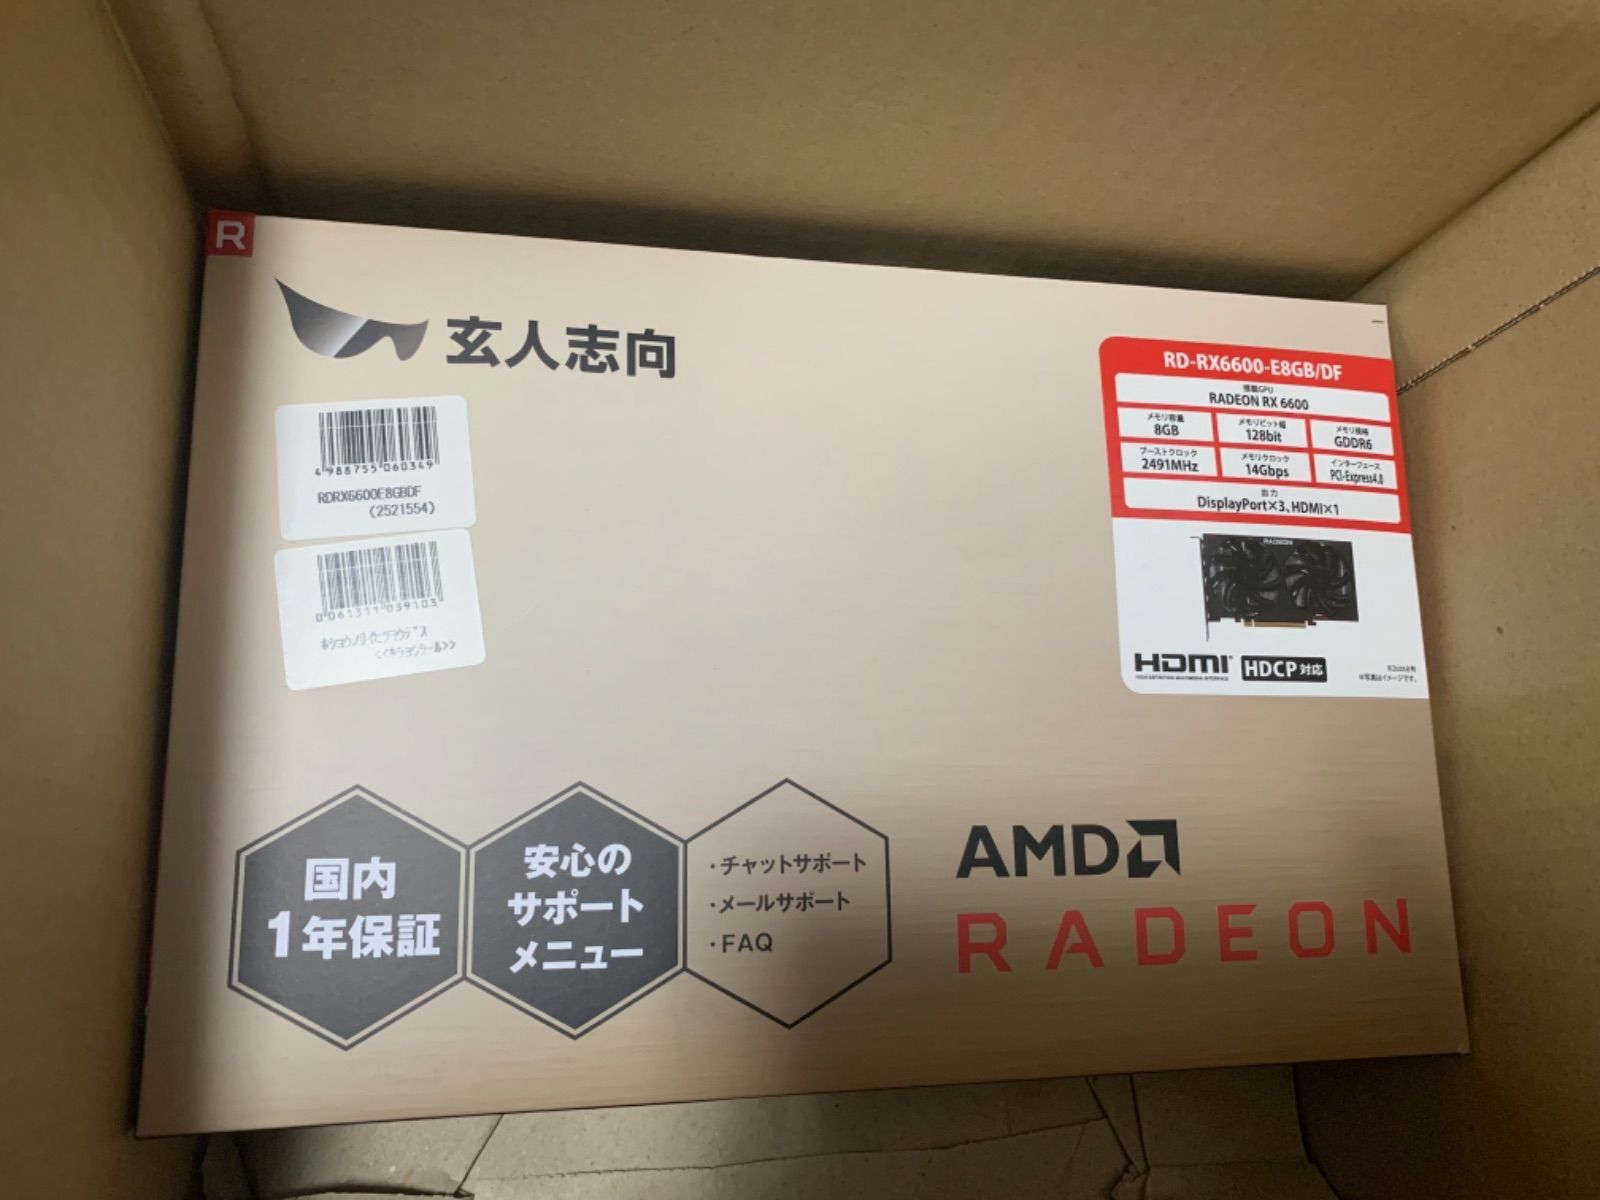 残りわずか 【新品・即日発送】玄人志向 AMD Radeon RD-RX6600-E8GB 得